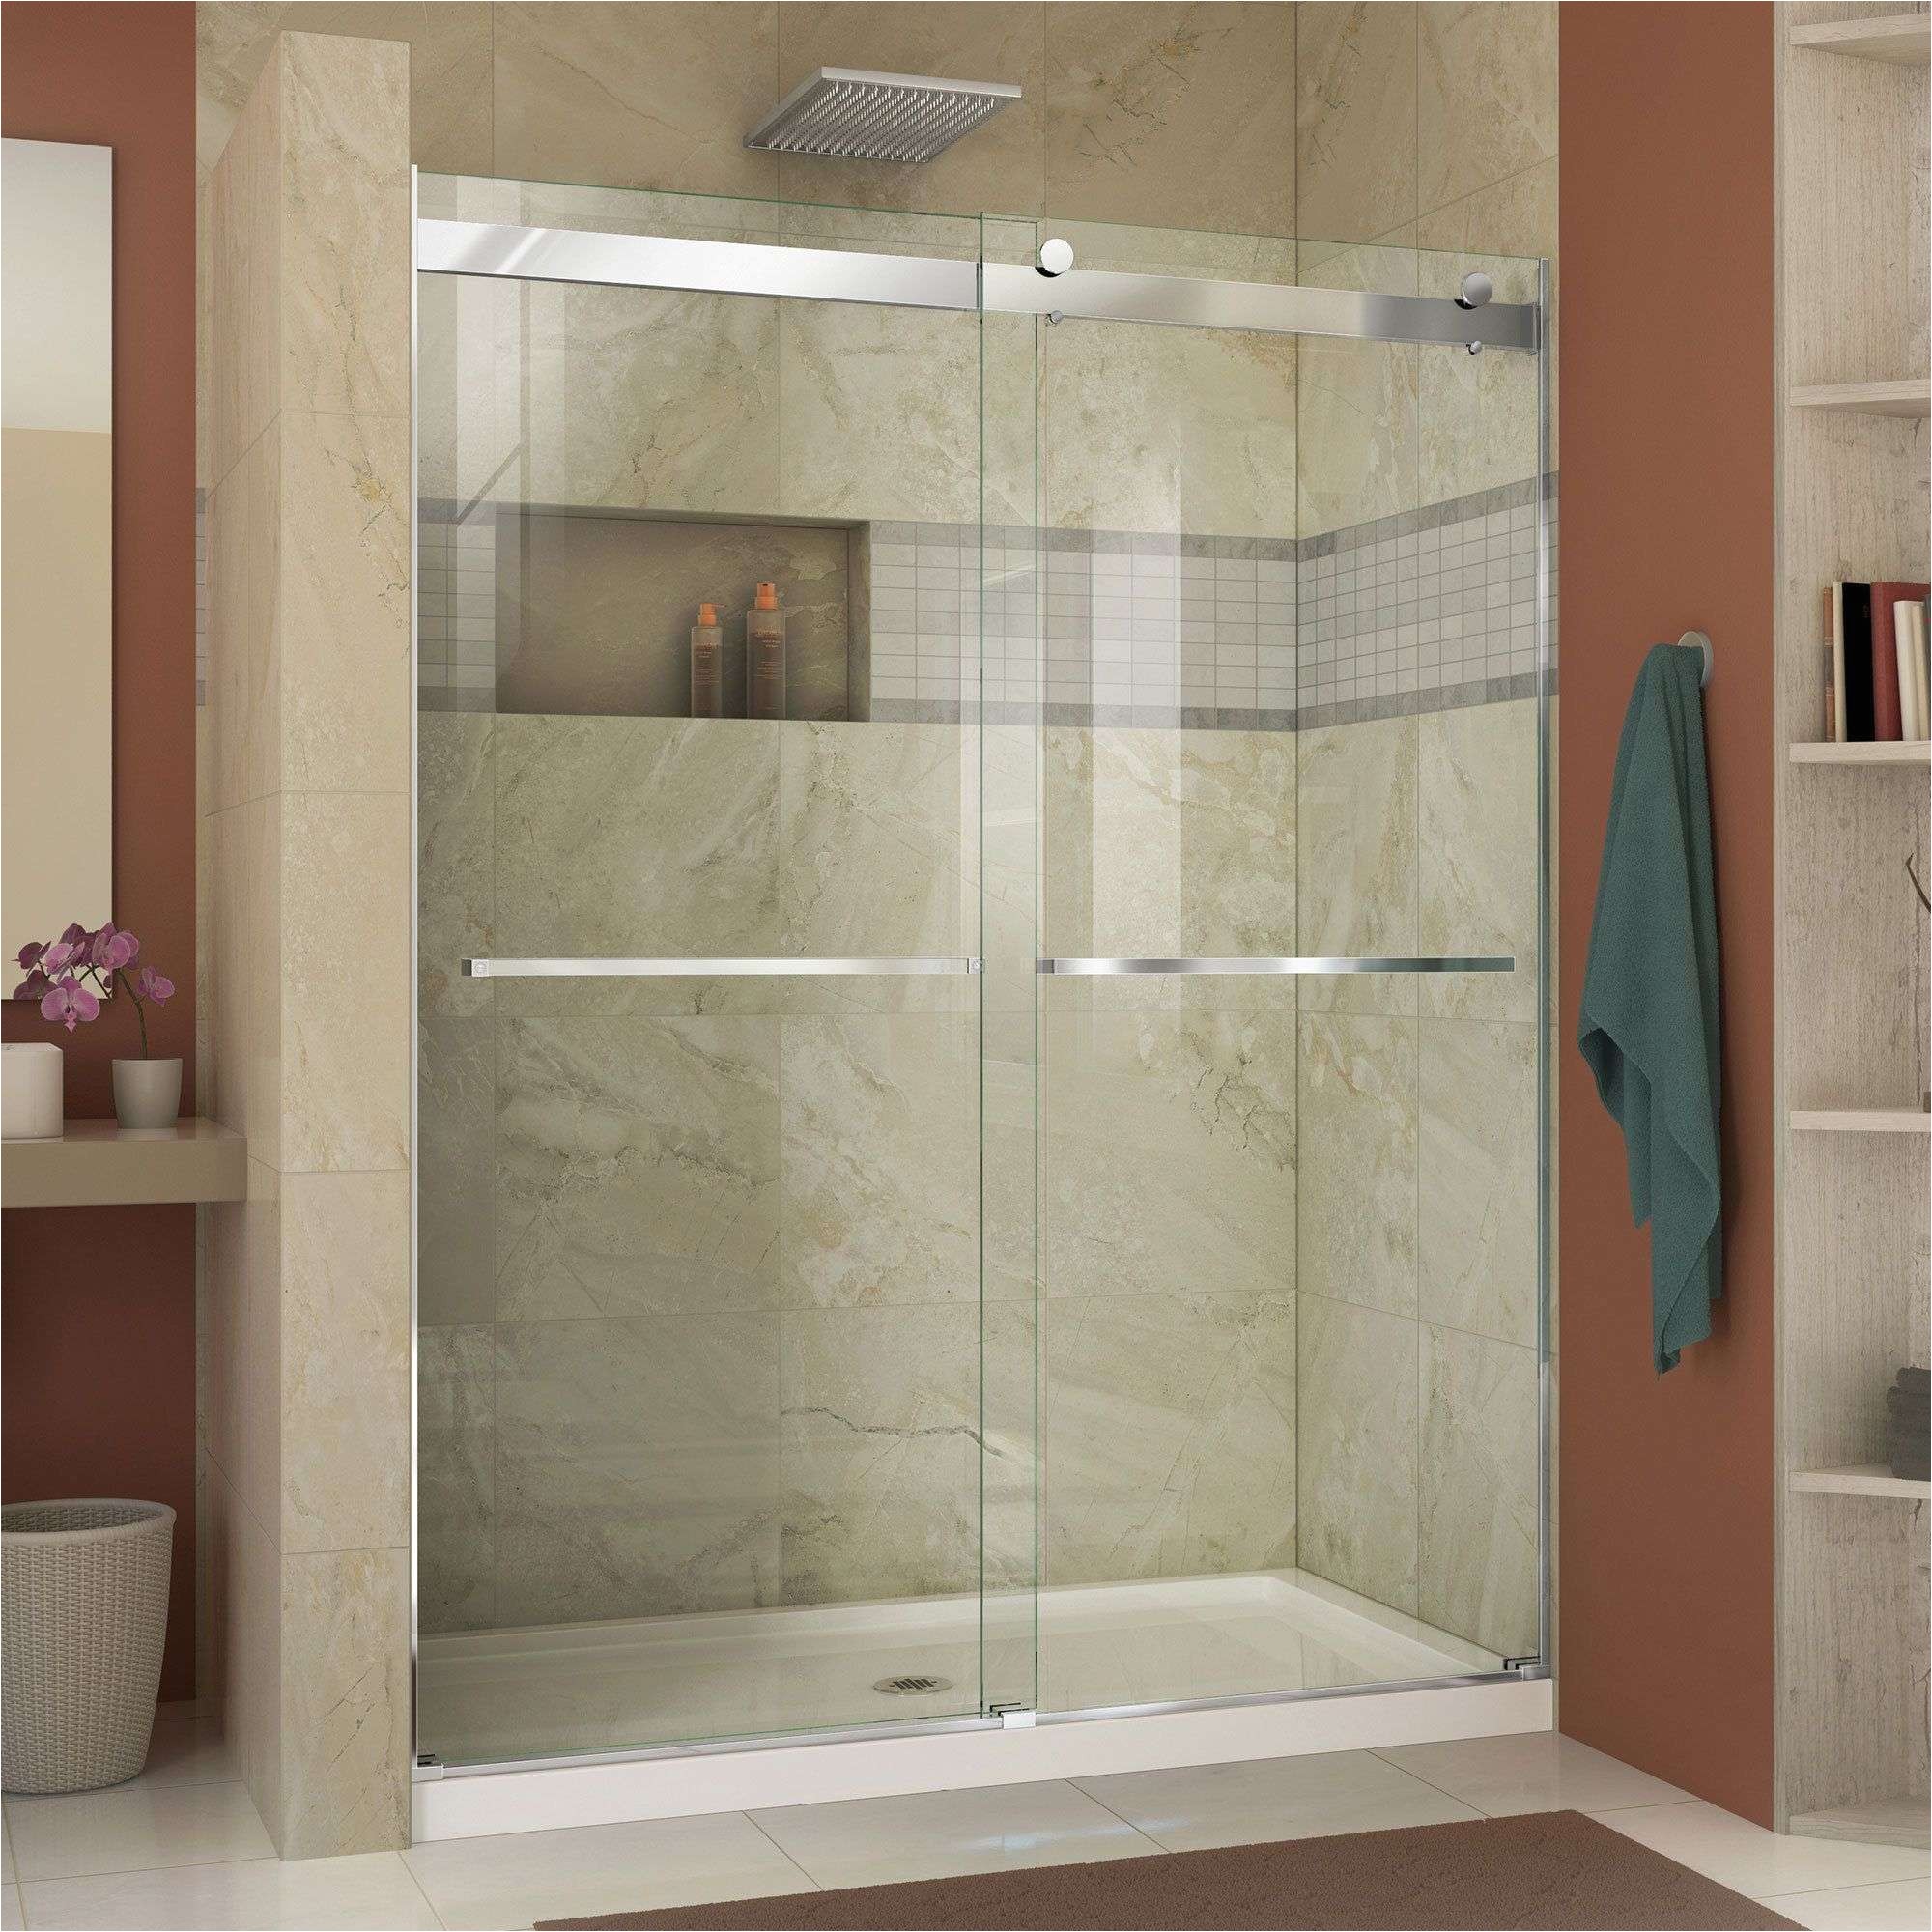 basco shower doors inspirational dreamline enigma x 56 to 60 inches fully frameless sliding shower